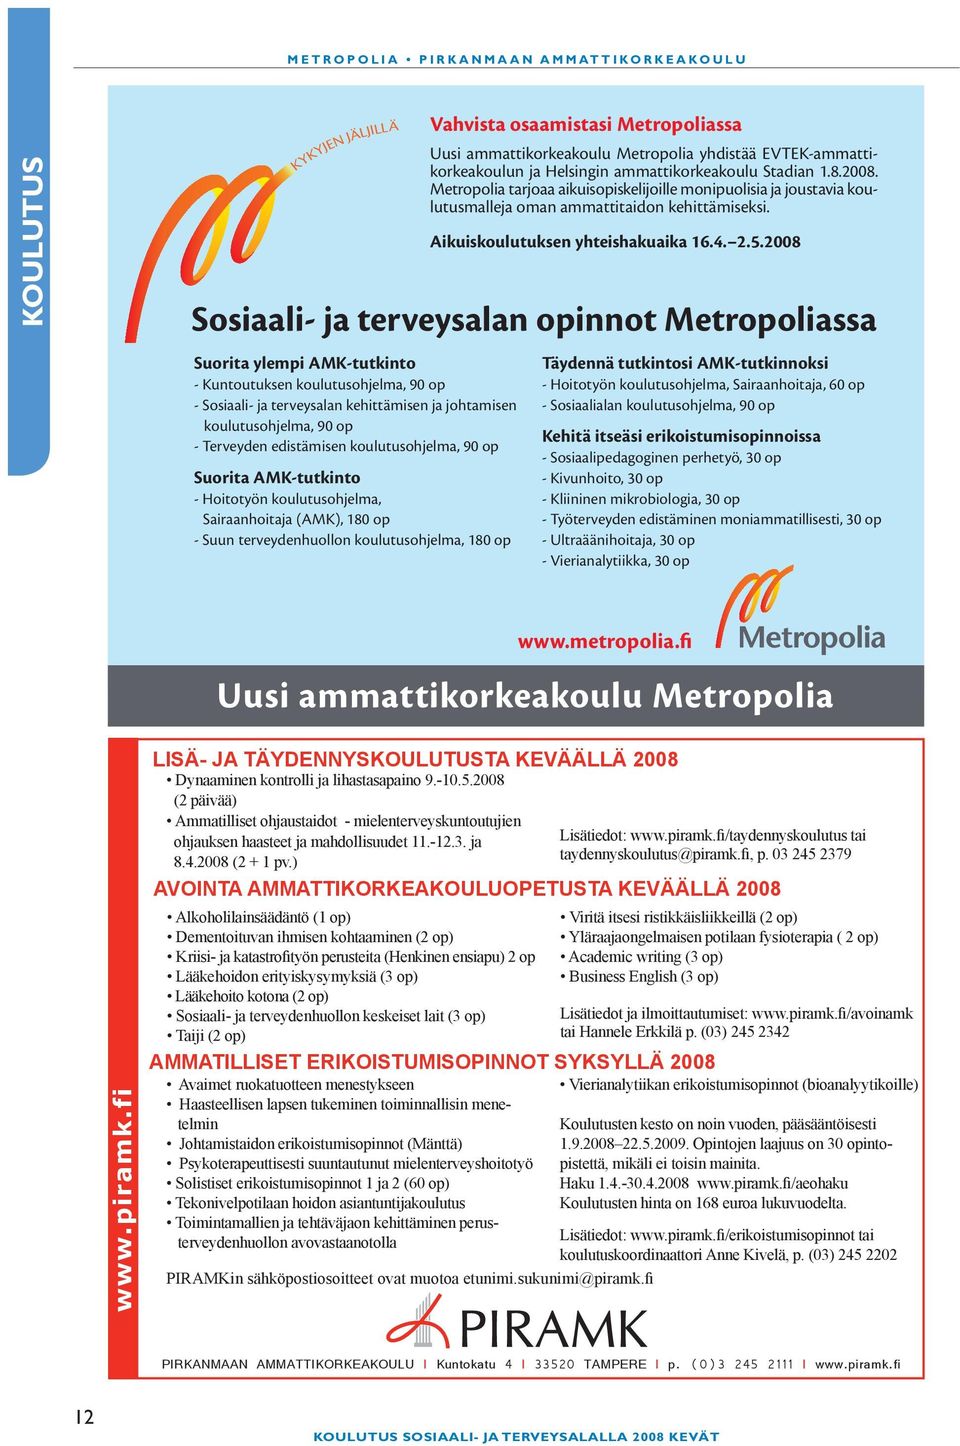 koulutusohjelma, 180 op Vahvista osaamistasi Metropoliassa Uusi ammattikorkeakoulu Metropolia yhdistää EVTEK-ammattikorkeakoulun ja Helsingin ammattikorkeakoulu Stadian 1.8.2008.